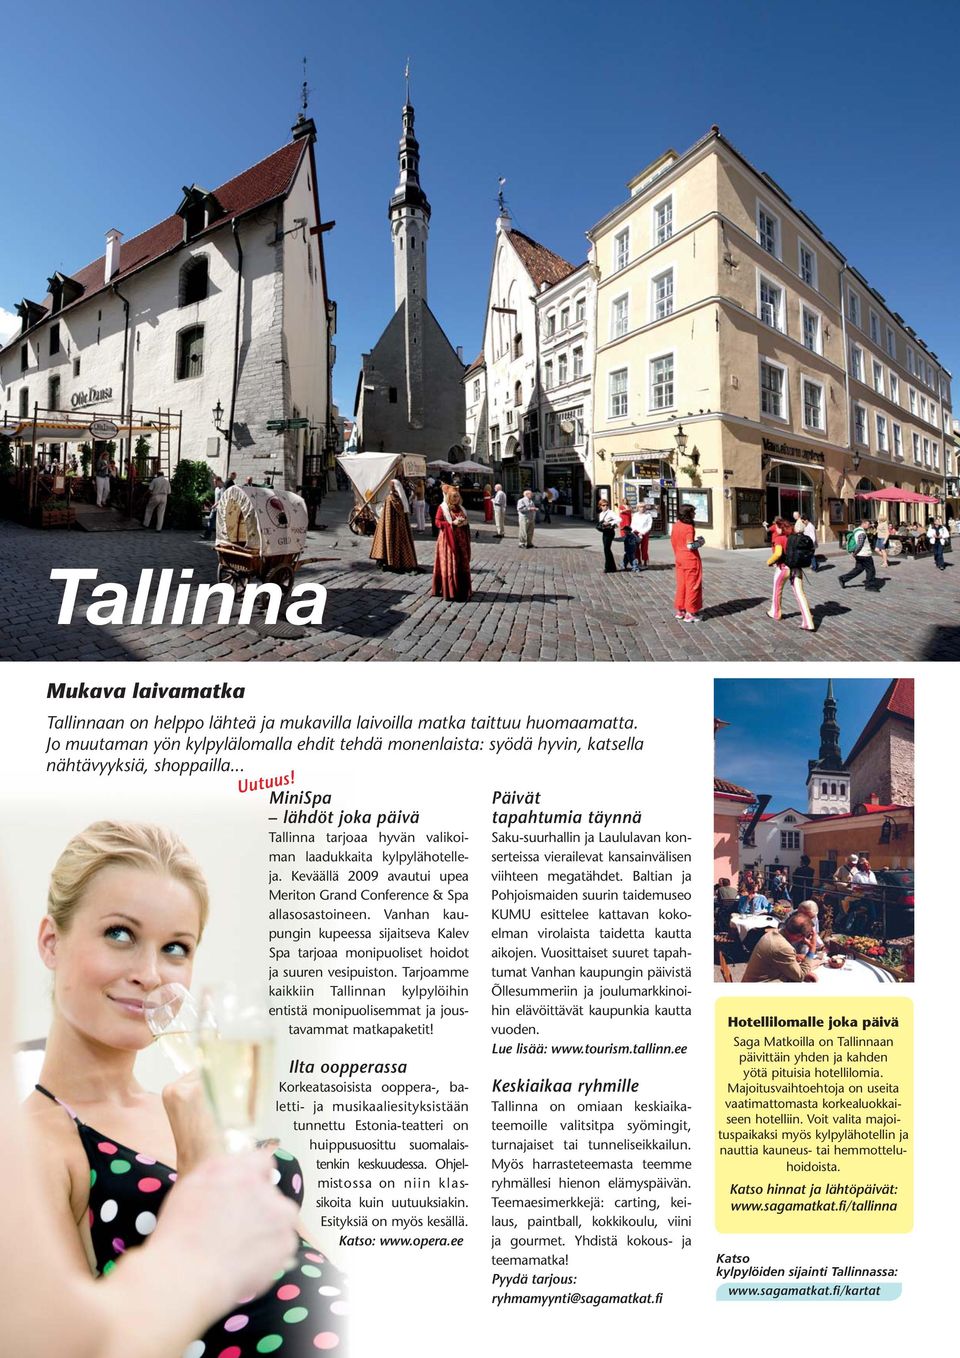 MiniSpa lähdöt joka päivä Tallinna tarjoaa hyvän valikoiman laadukkaita kylpylähotelleja. Keväällä 2009 avautui upea Meriton Grand Conference & Spa allasosastoineen.